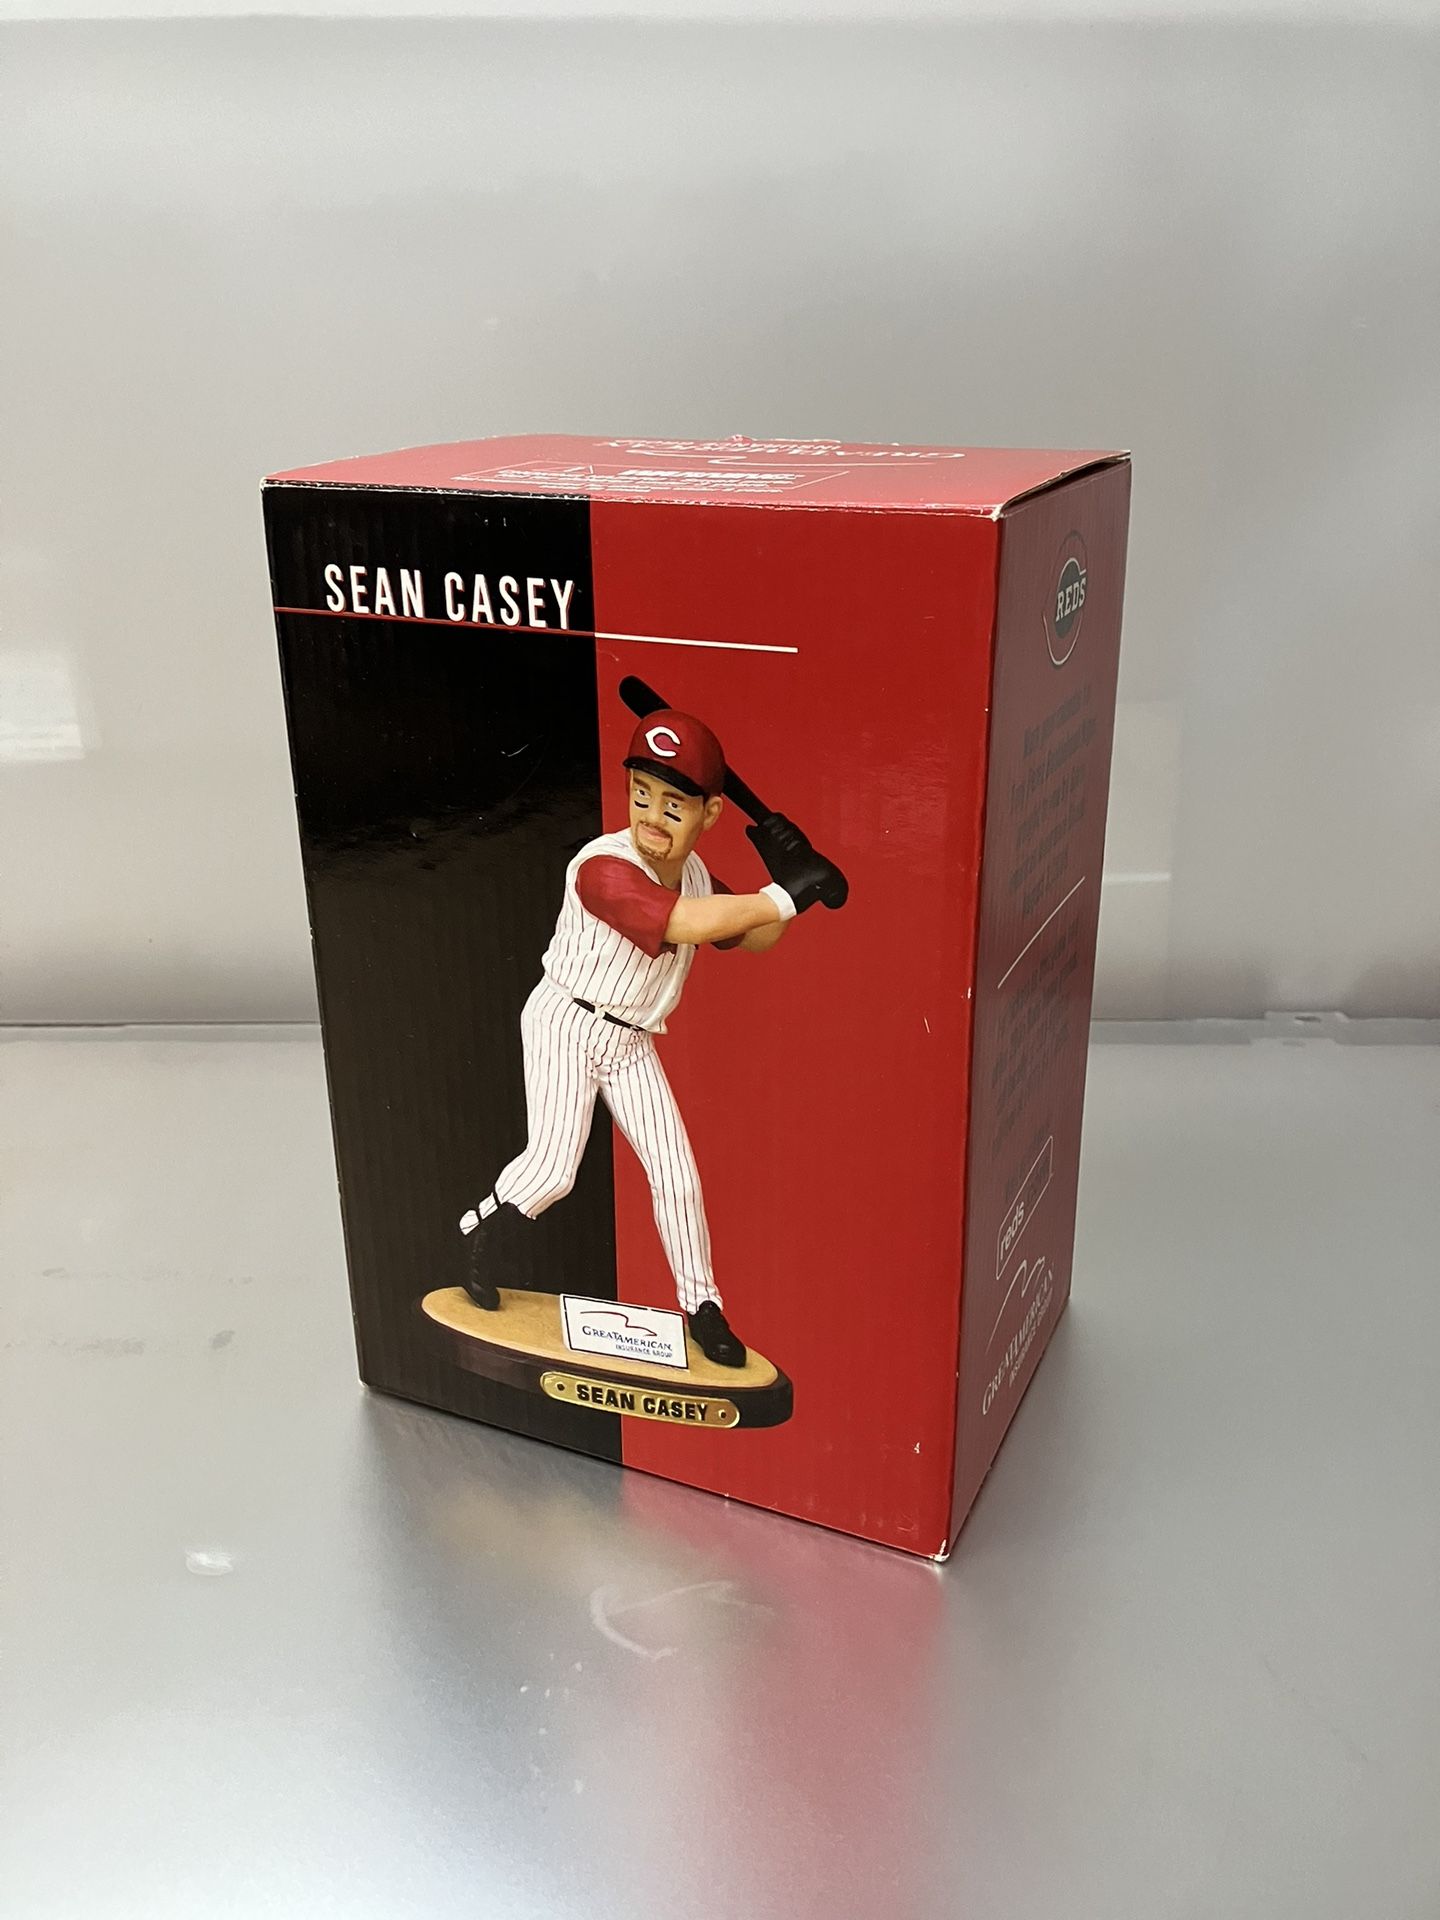 2005 Cincinnati Reds Sean Casey Figurine Statue